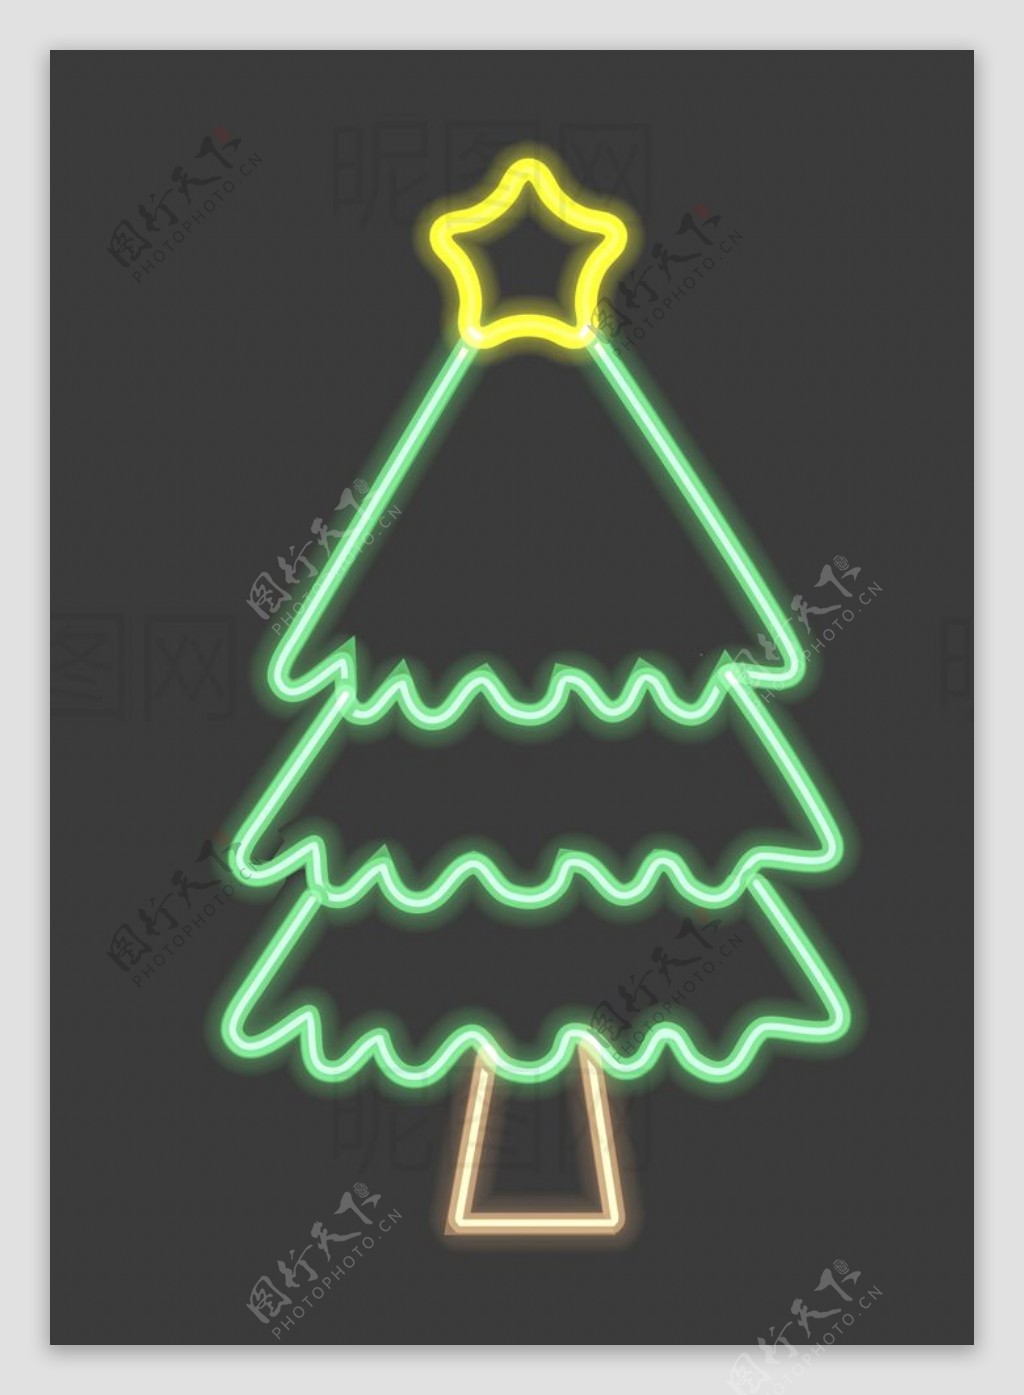 霓虹灯圣诞树图片